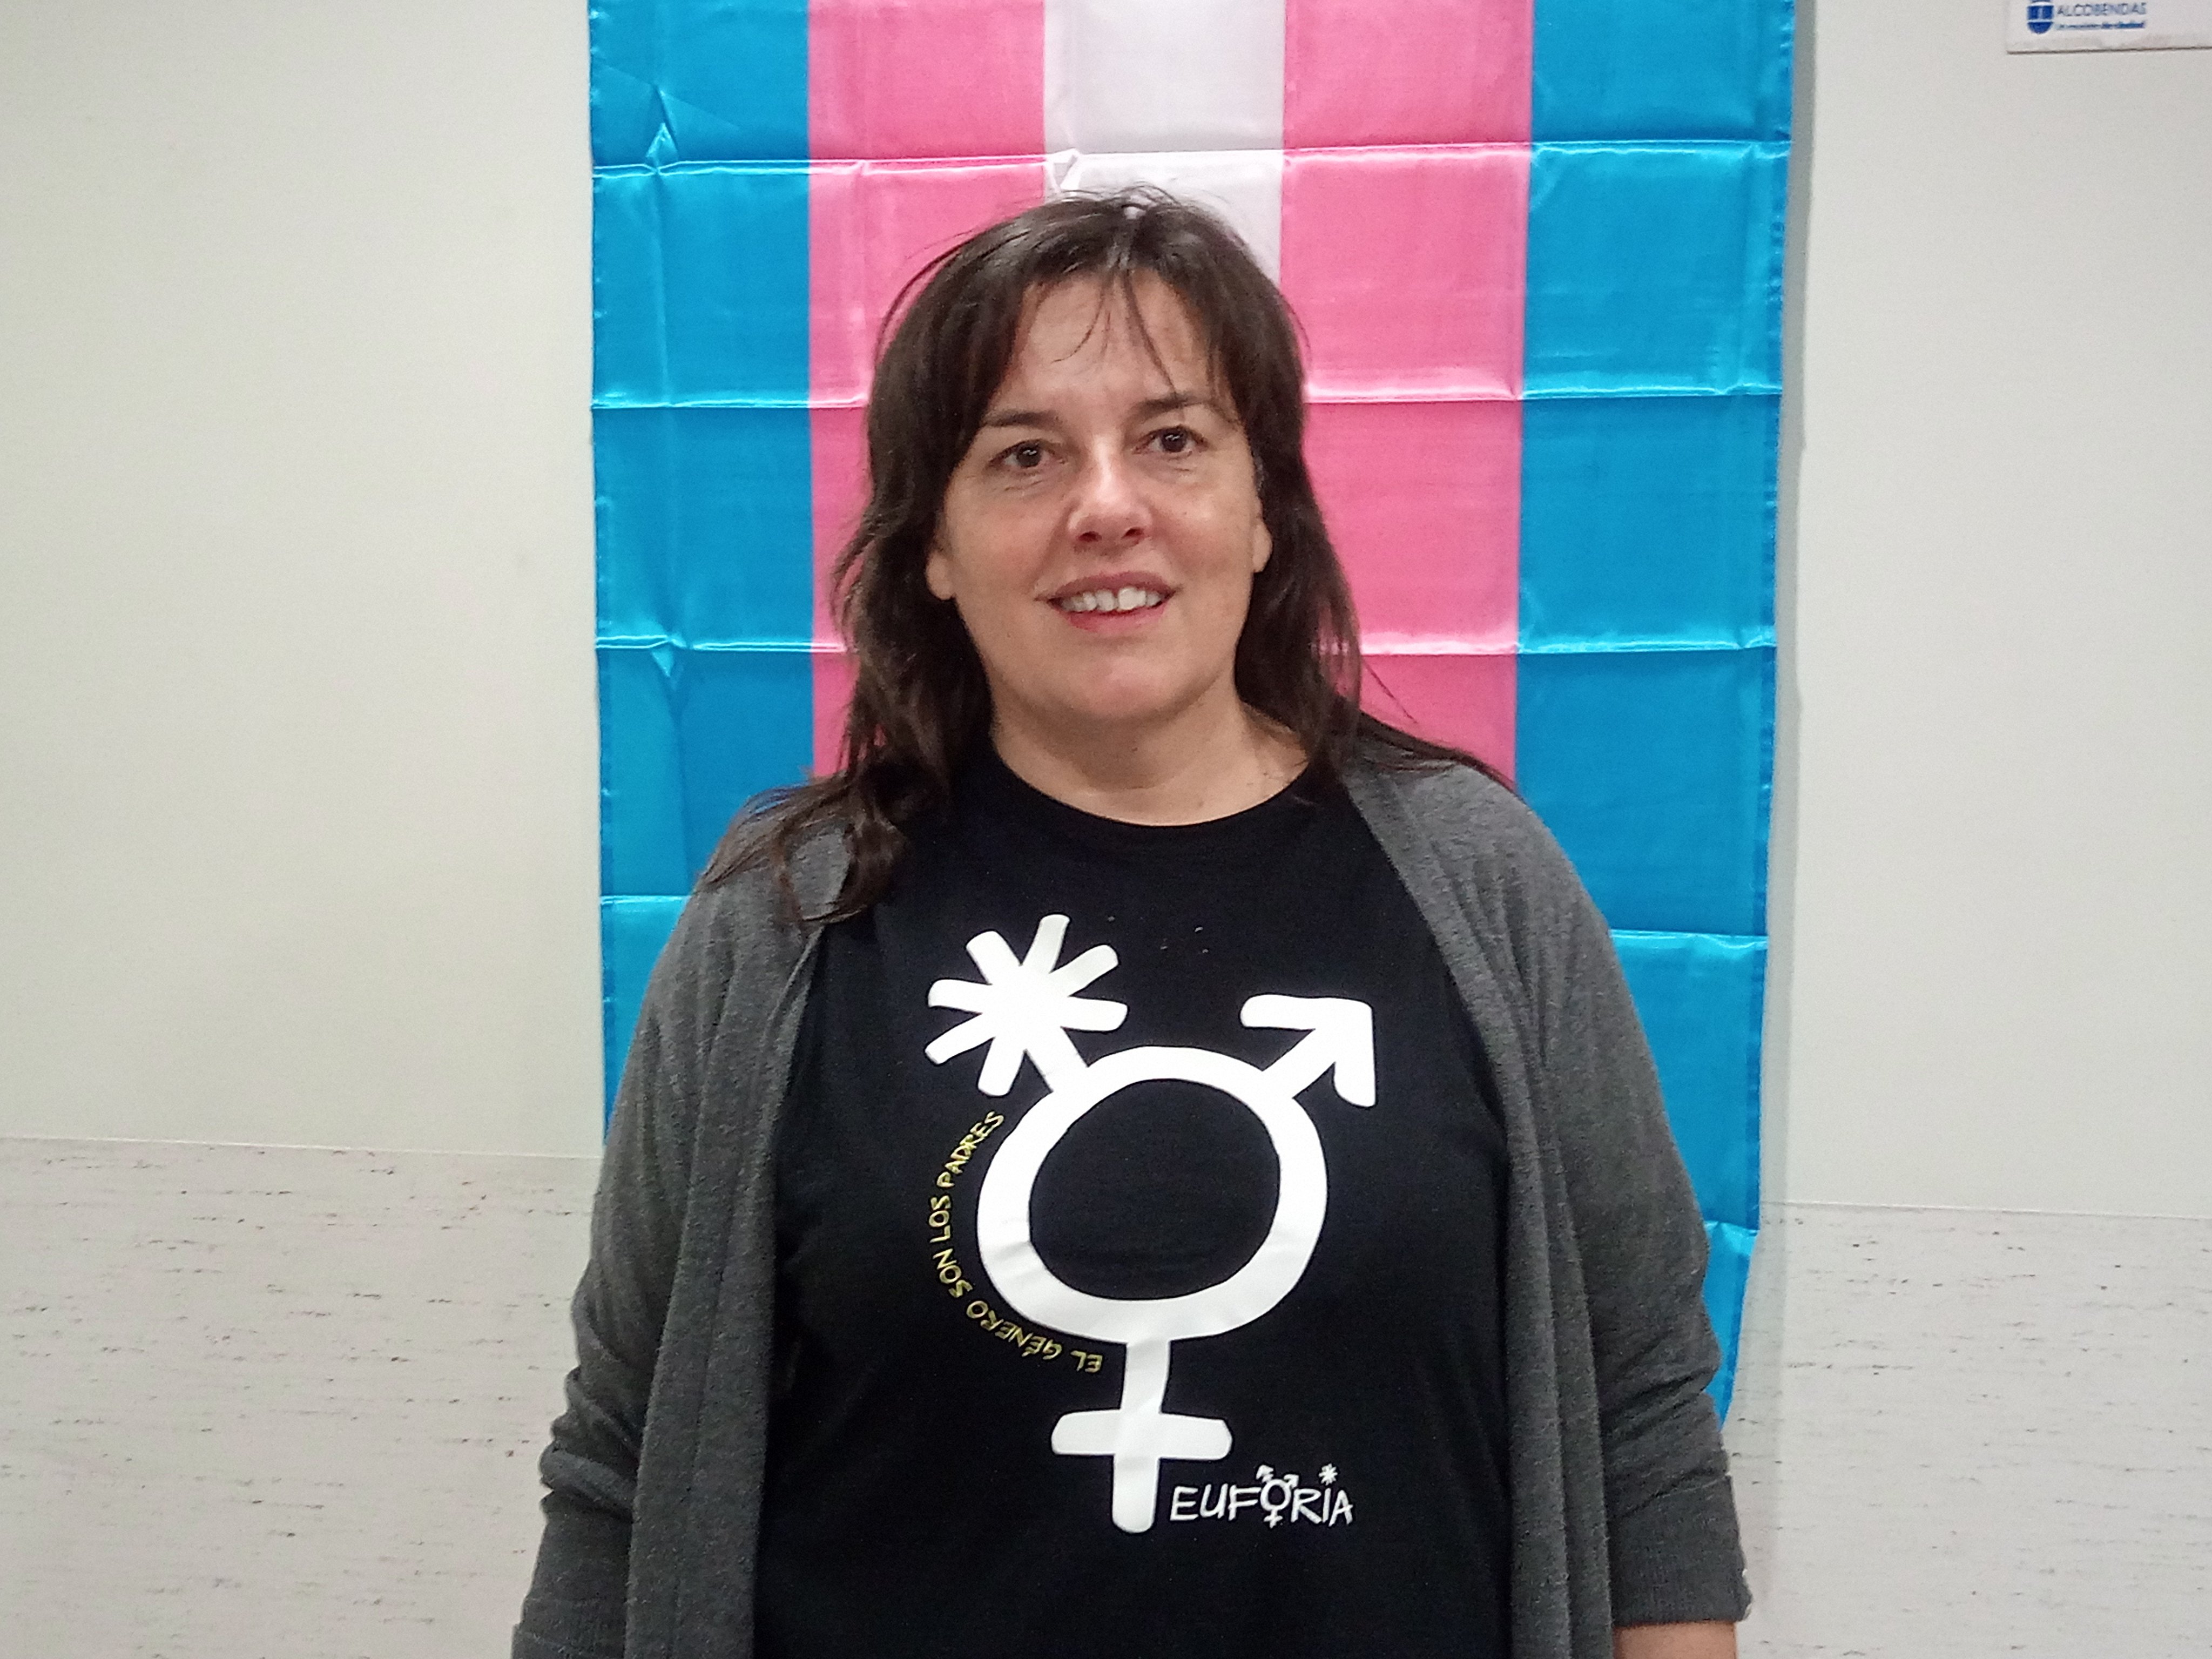 Natalia Aventín: "S’ha de respectar el nom i el gènere del menor trans, si no, és maltractament"